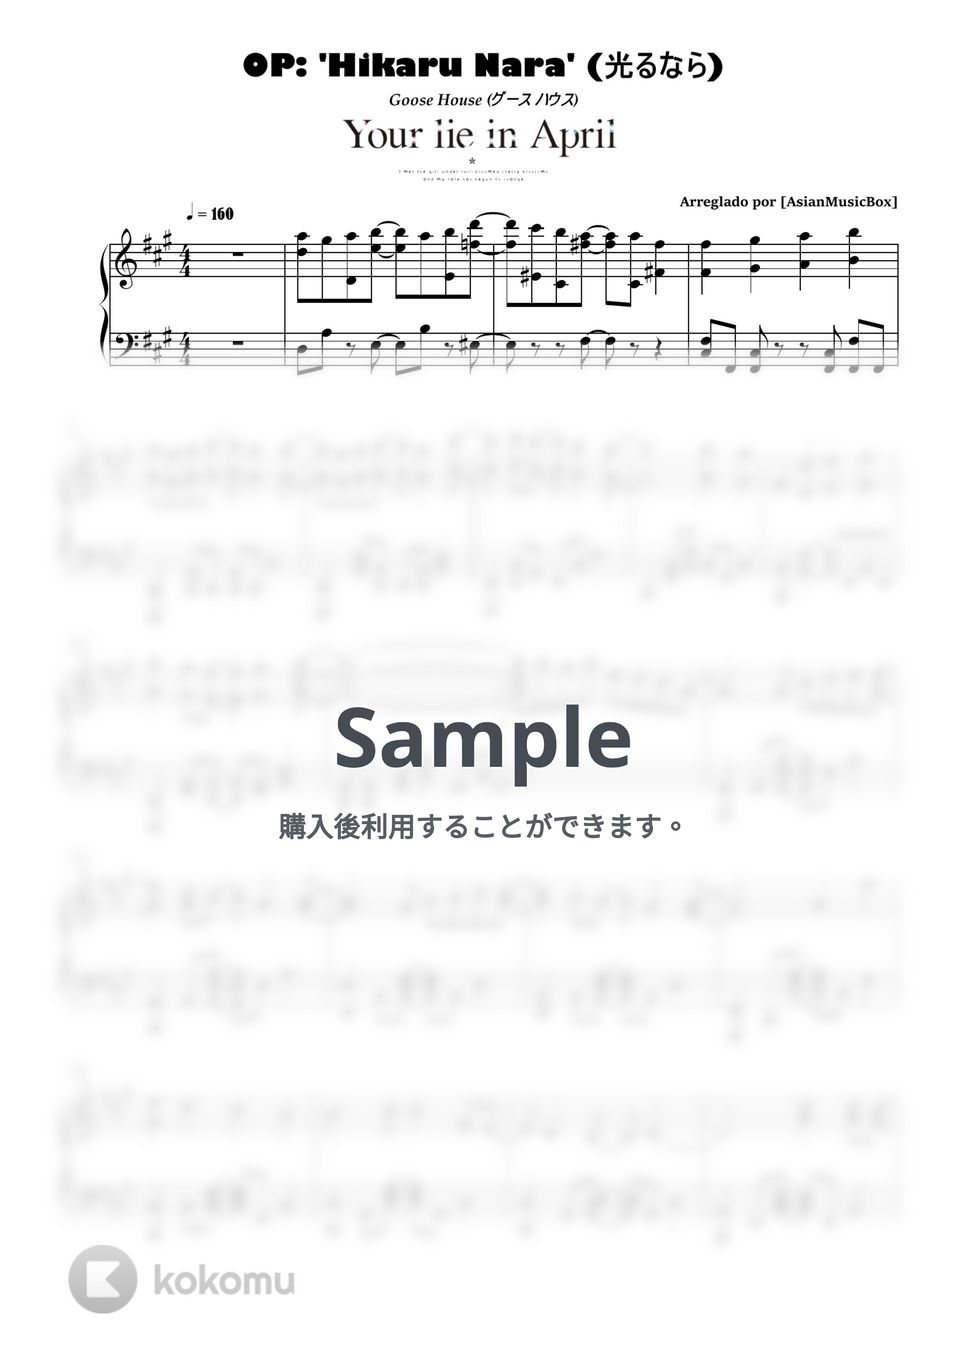 グース ハウス - 光るなら (楽譜、MIDI、ドラム & WAVファイル) by AsianMusicBox